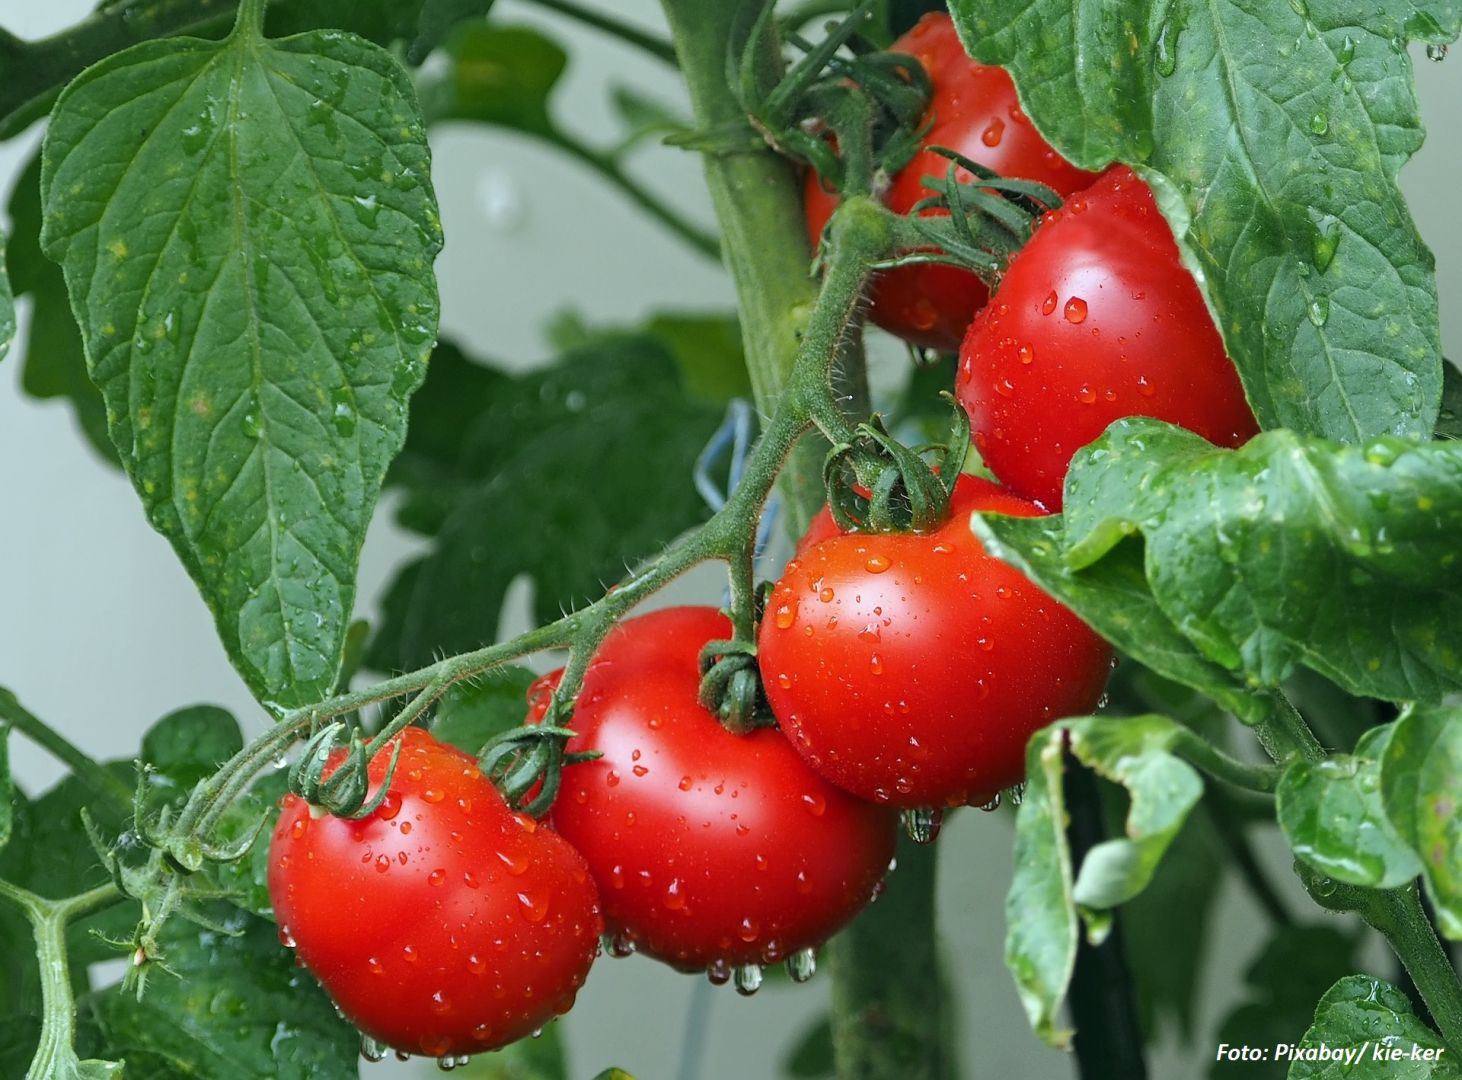 Türkische Tomatenexporte nach Russland gesteigert